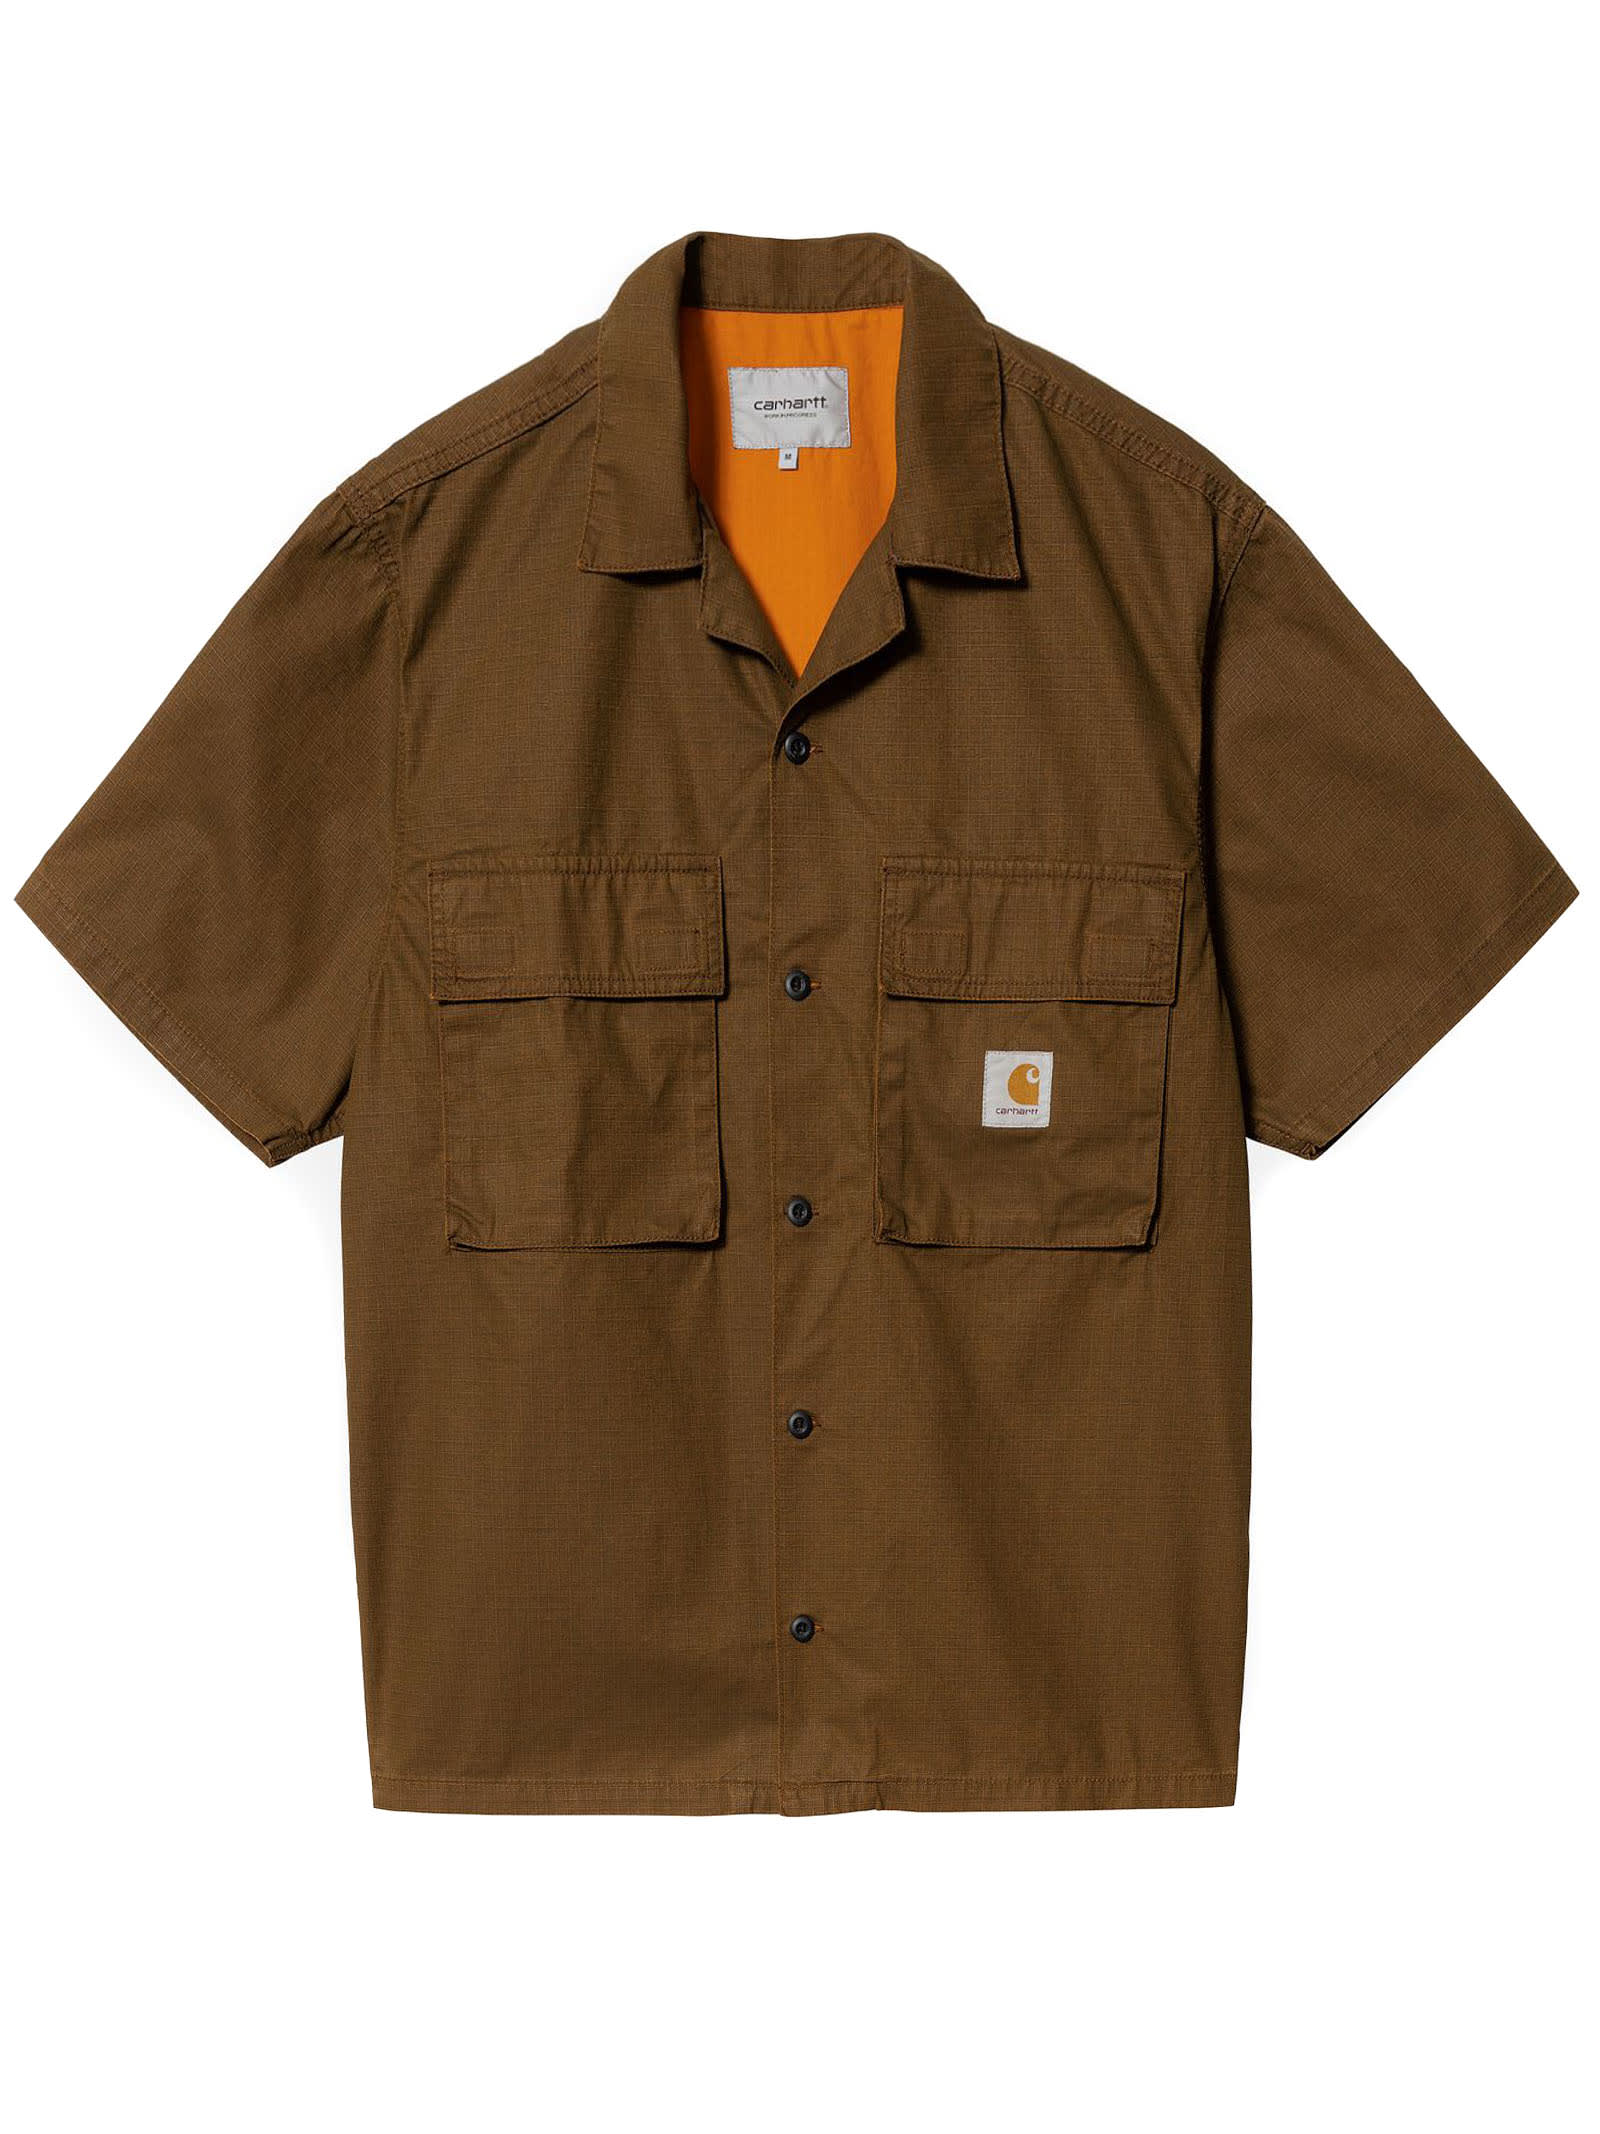 Carhartt Brown Cotton Shirt